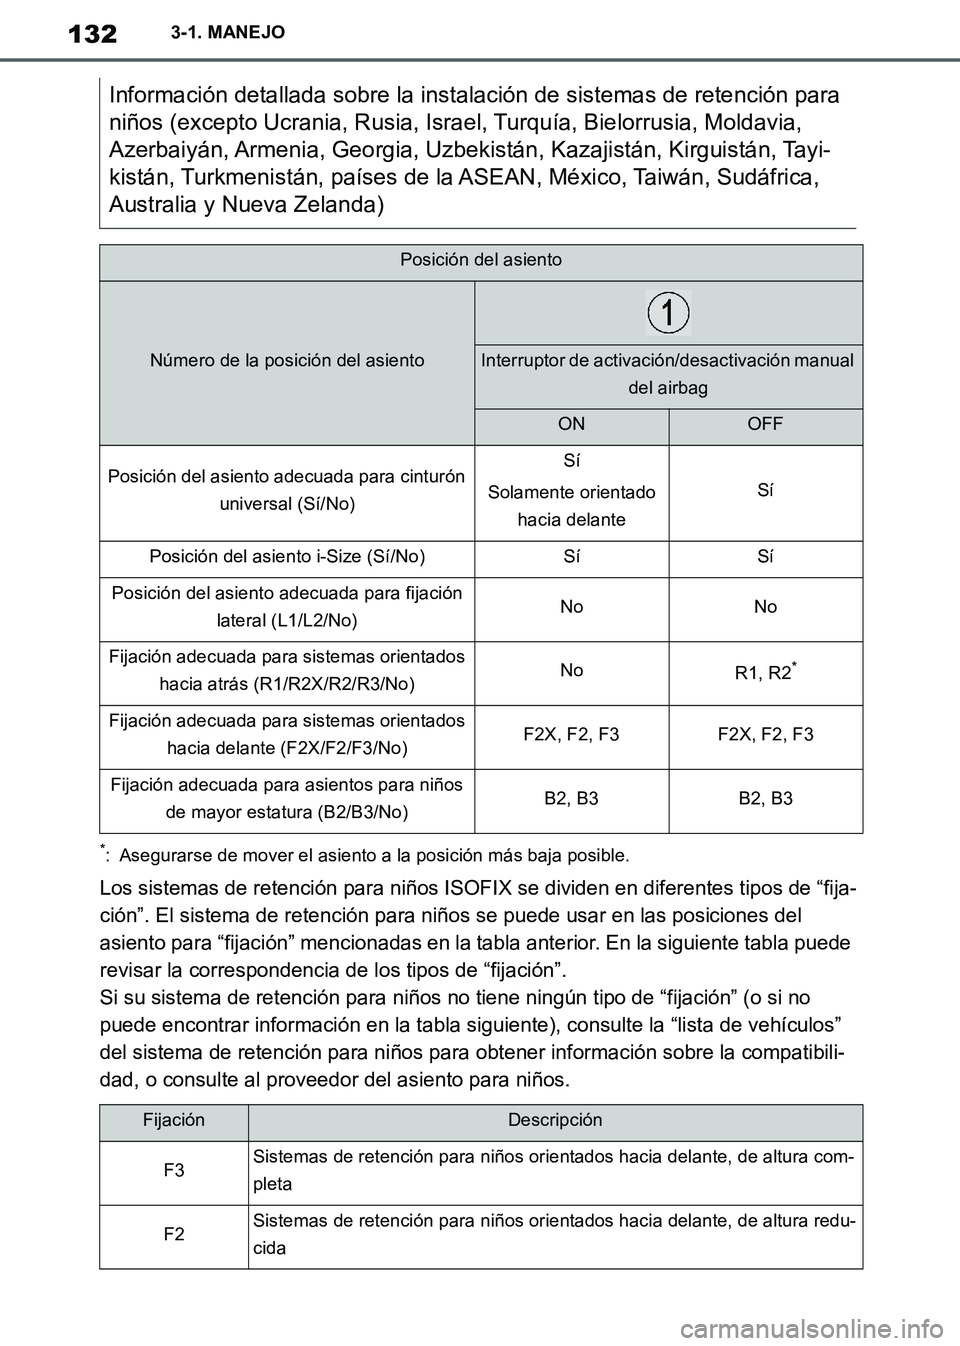 TOYOTA SUPRA 2019  Manuale de Empleo (in Spanish) 132
Supra Owners Manual_ES
3-1. MANEJO
*: Asegurarse de mover el asiento a la posición más baja posible.
Los sistemas de retención para niños ISOFIX se dividen en diferentes tipos de “fija-
ci�